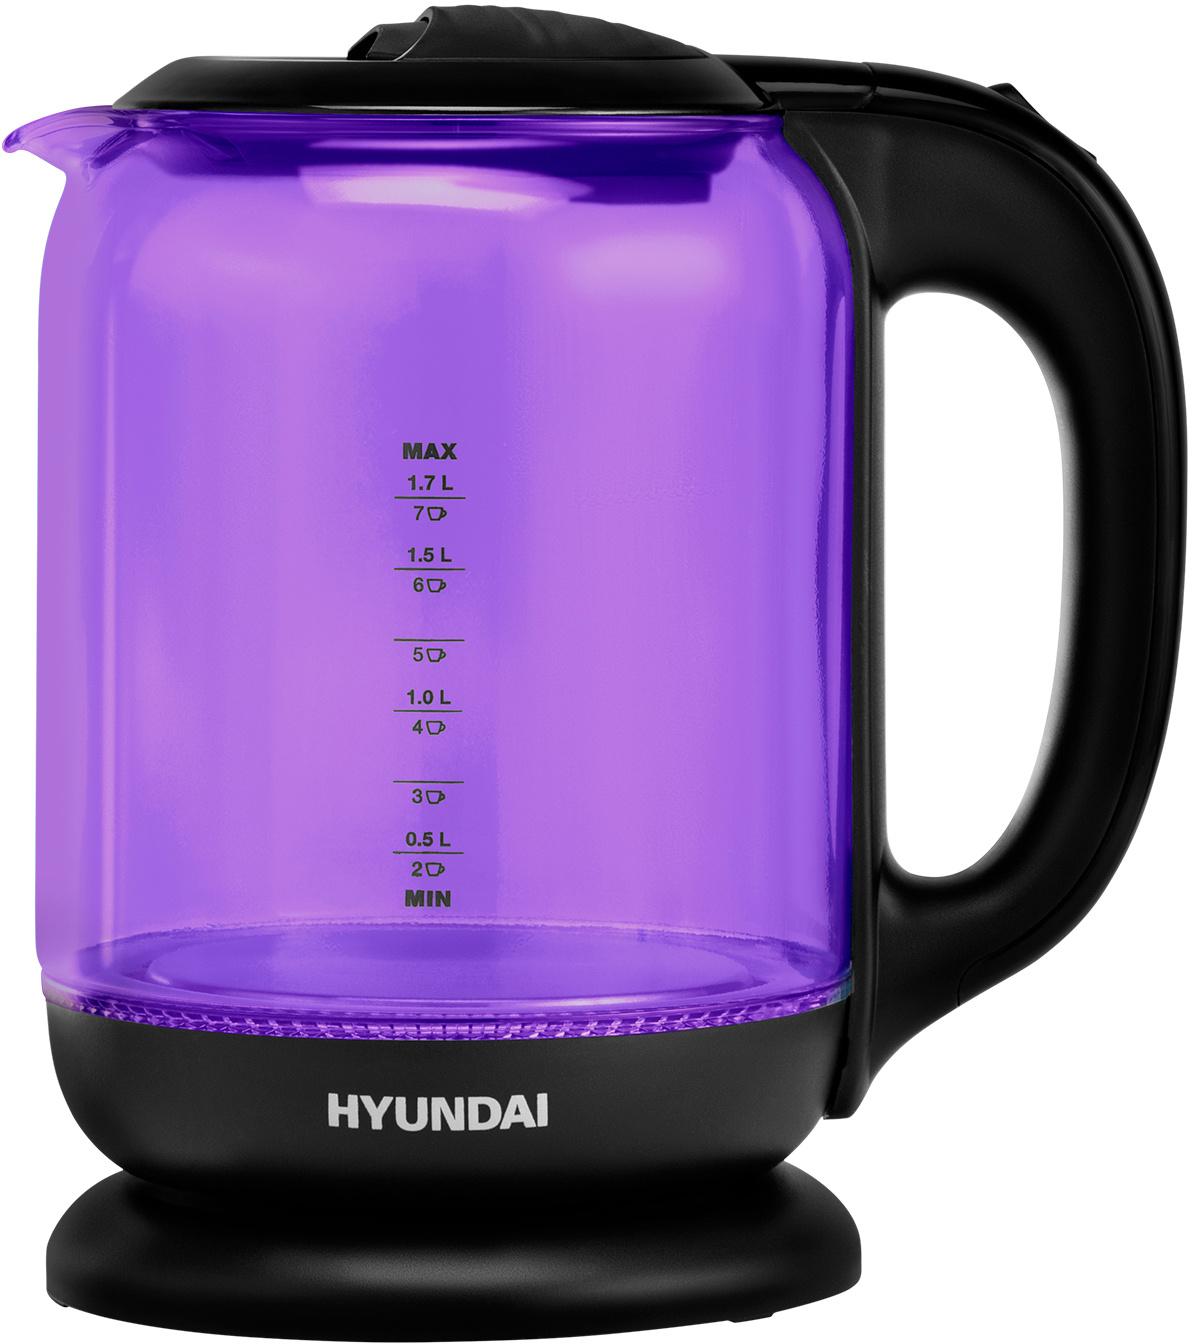 Чайник электрический HYUNDAI HYK-G5809 1.8 л фиолетовый, черный (+возврат бонусов)